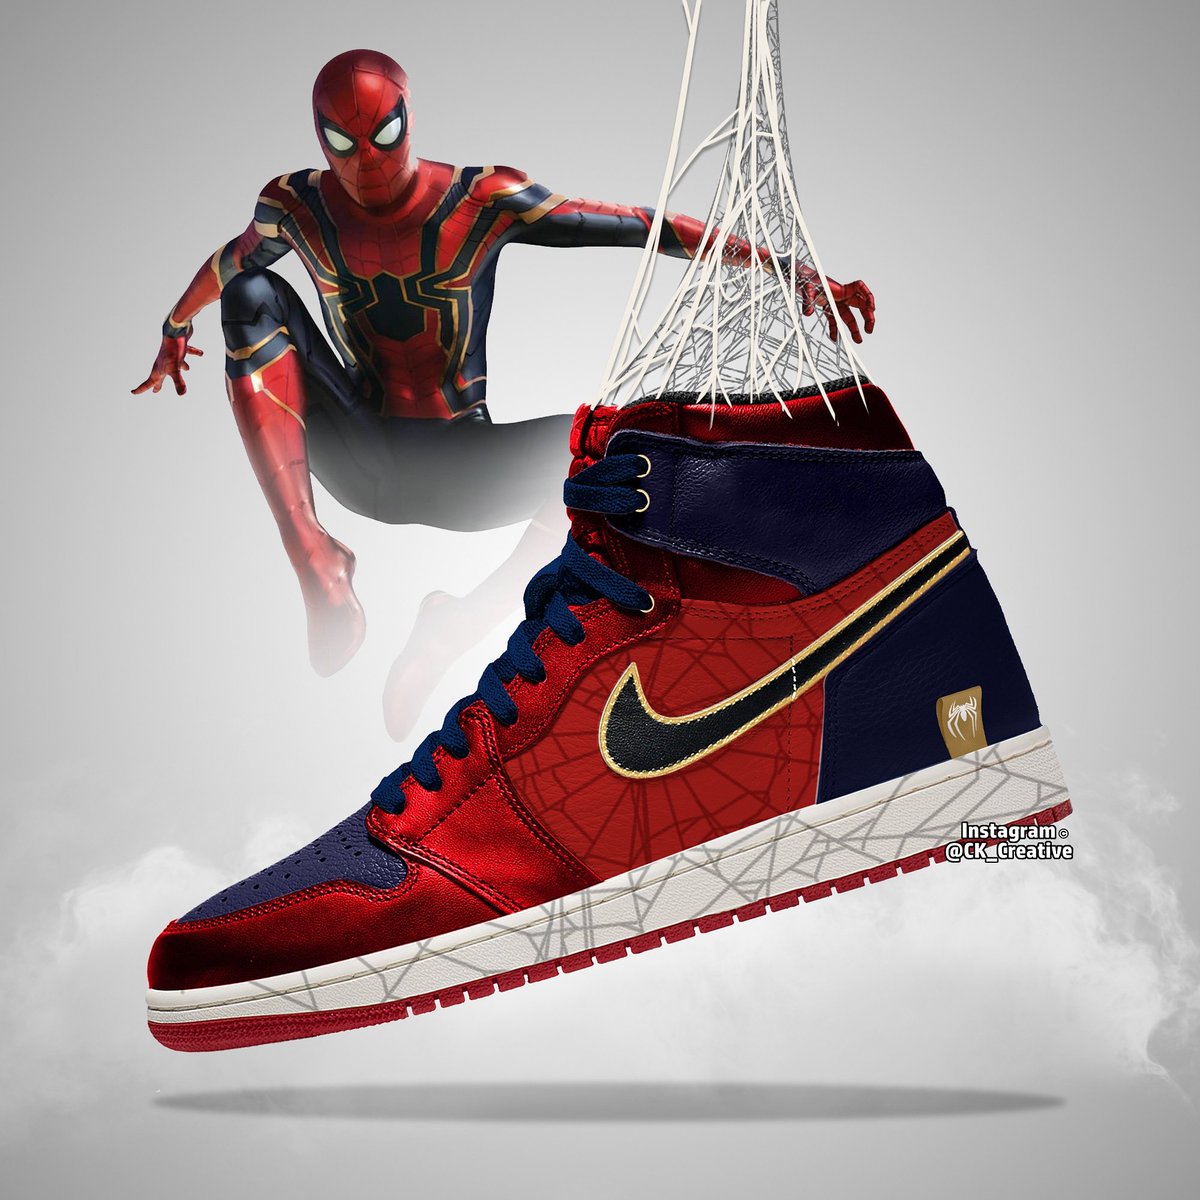 Amasar Estéril estafa Chris Kemp on Twitter: "Spiderman Nike Jordan Design #avengersendgame  #avengers #endgame #spiderman #SpiderVerse #SpiderManFarFromHome #nile  #nikejordans https://t.co/FKzdg481gE" / Twitter